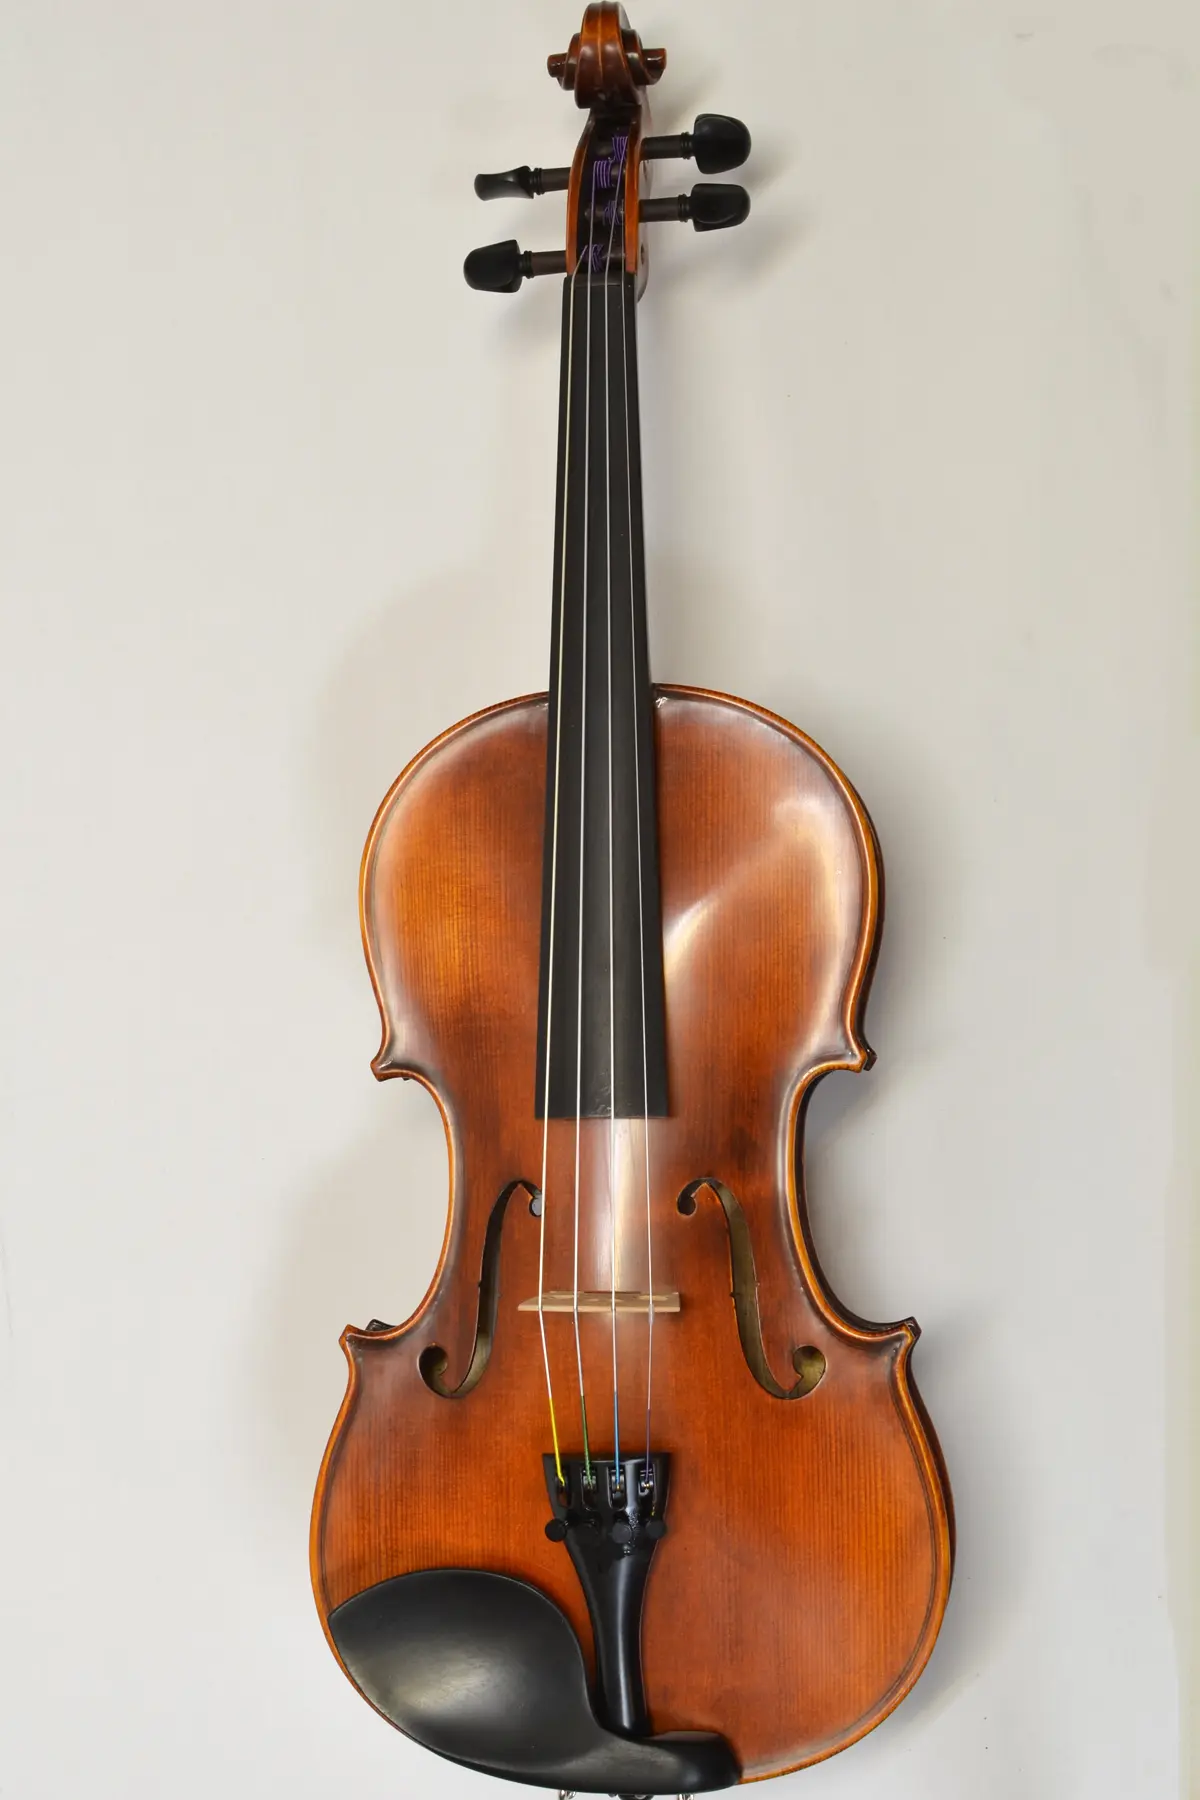 westbury violin - Are Westbury violins any good